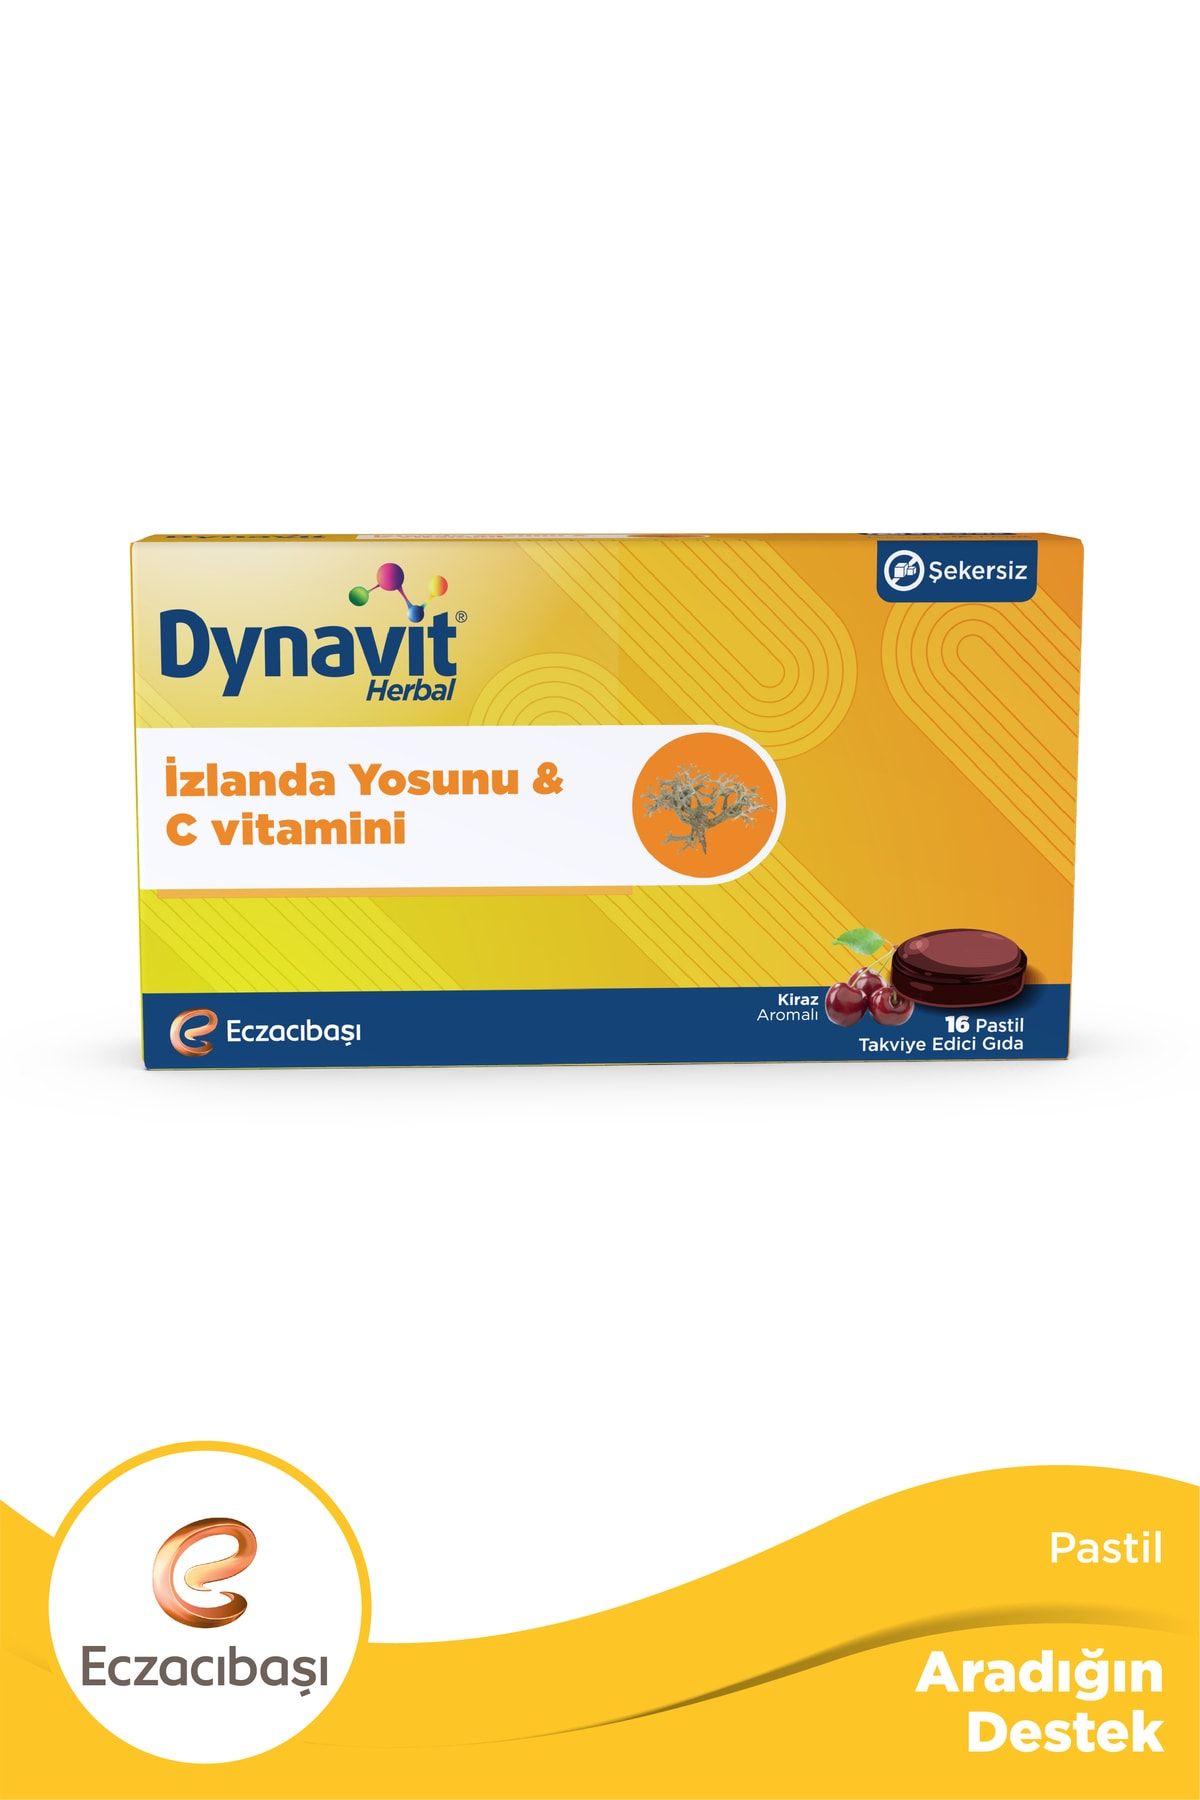 Dynavit Herbal Pastil İzlanda Yosunu ve C Vitamini 16 pastil ( 1 ADET )